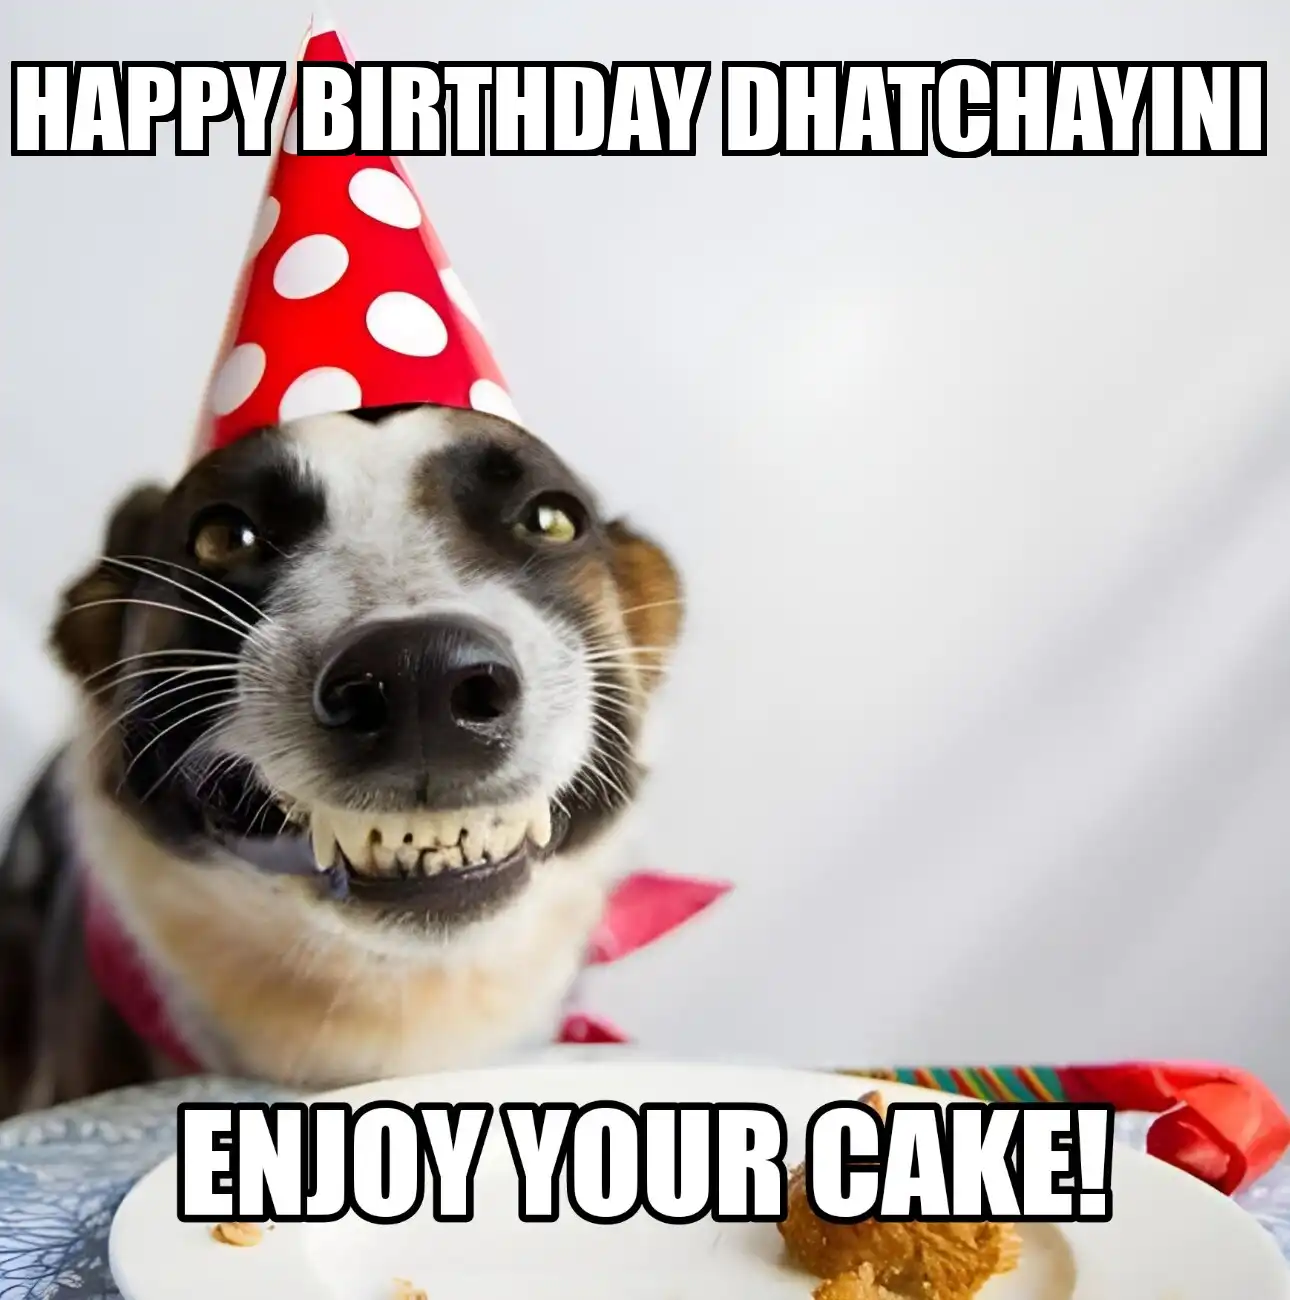 Happy Birthday Dhatchayini Enjoy Your Cake Dog Meme